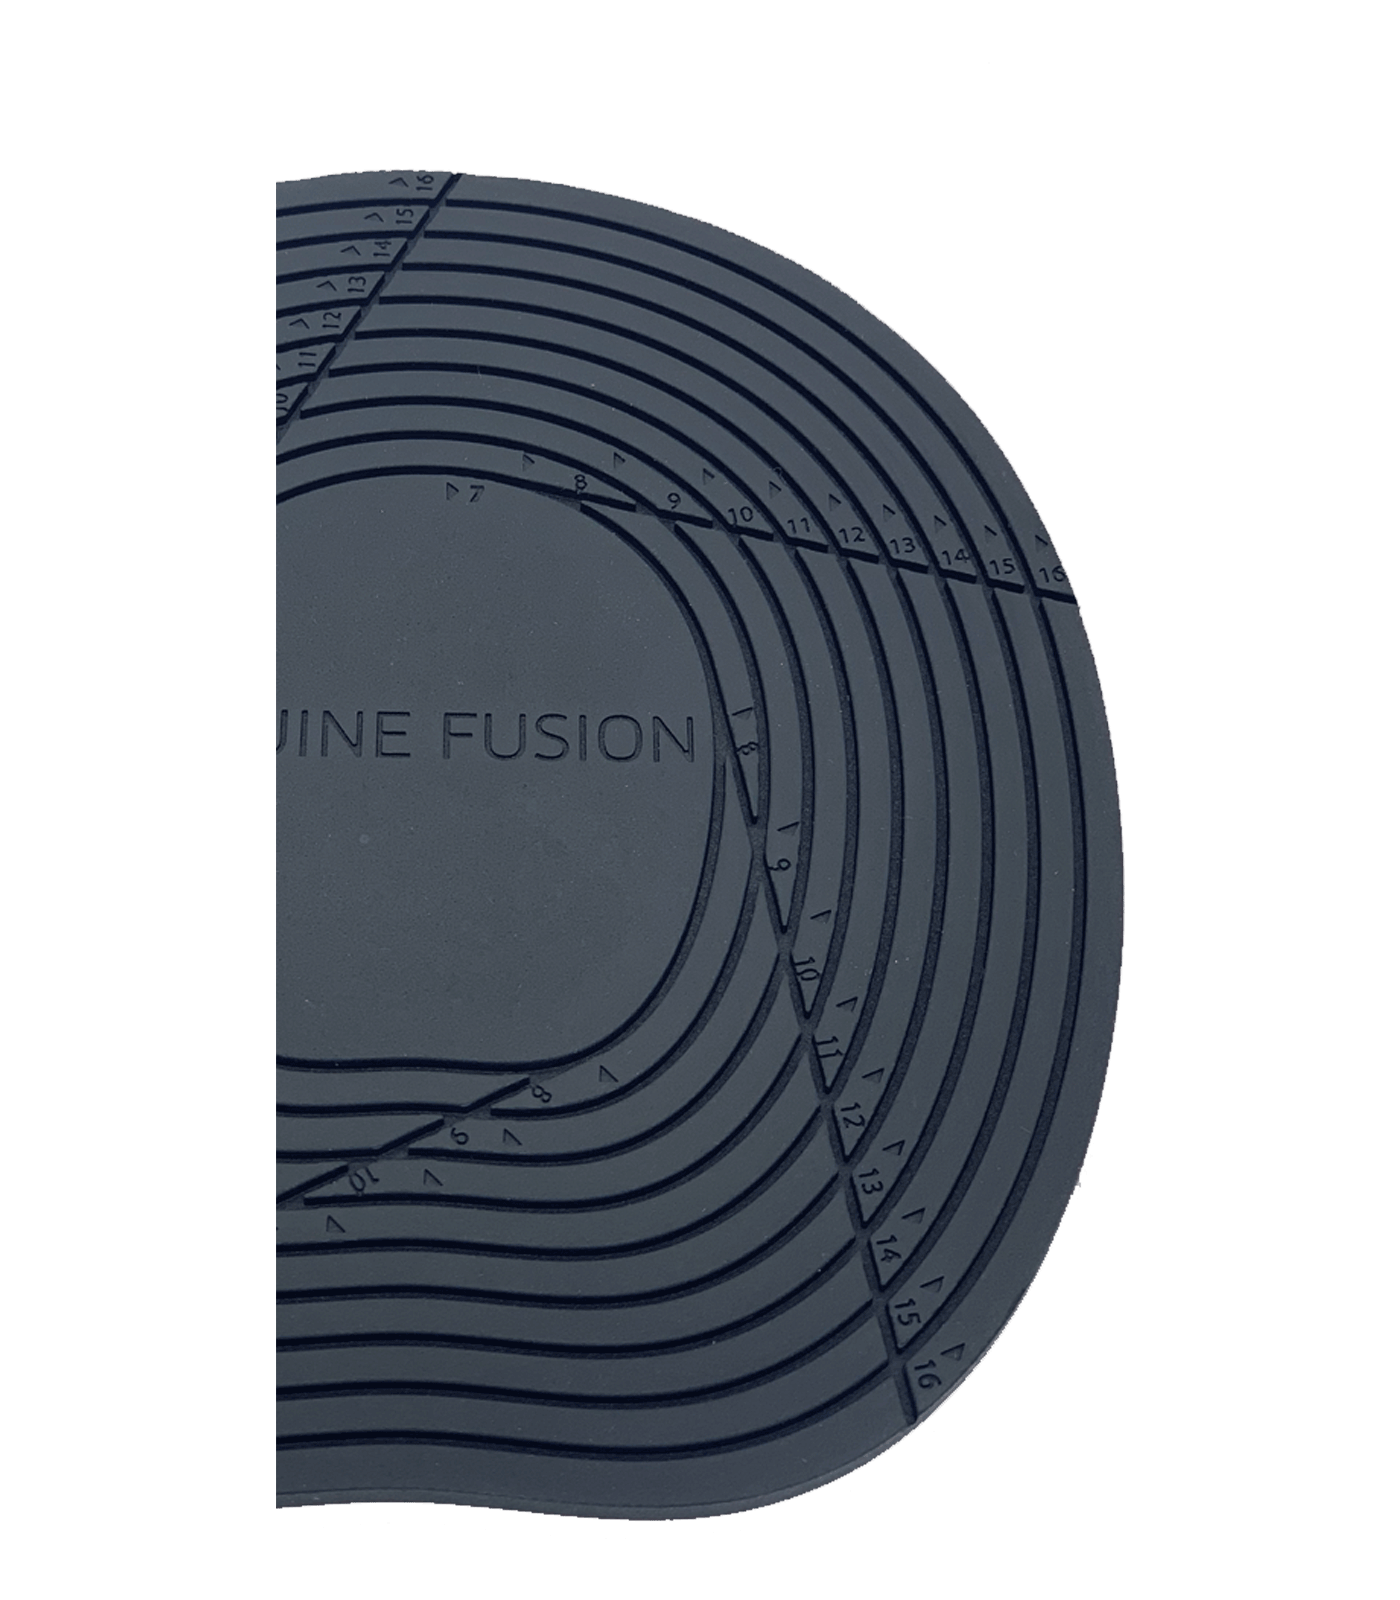 Equine Fusion Dampening Pad regular